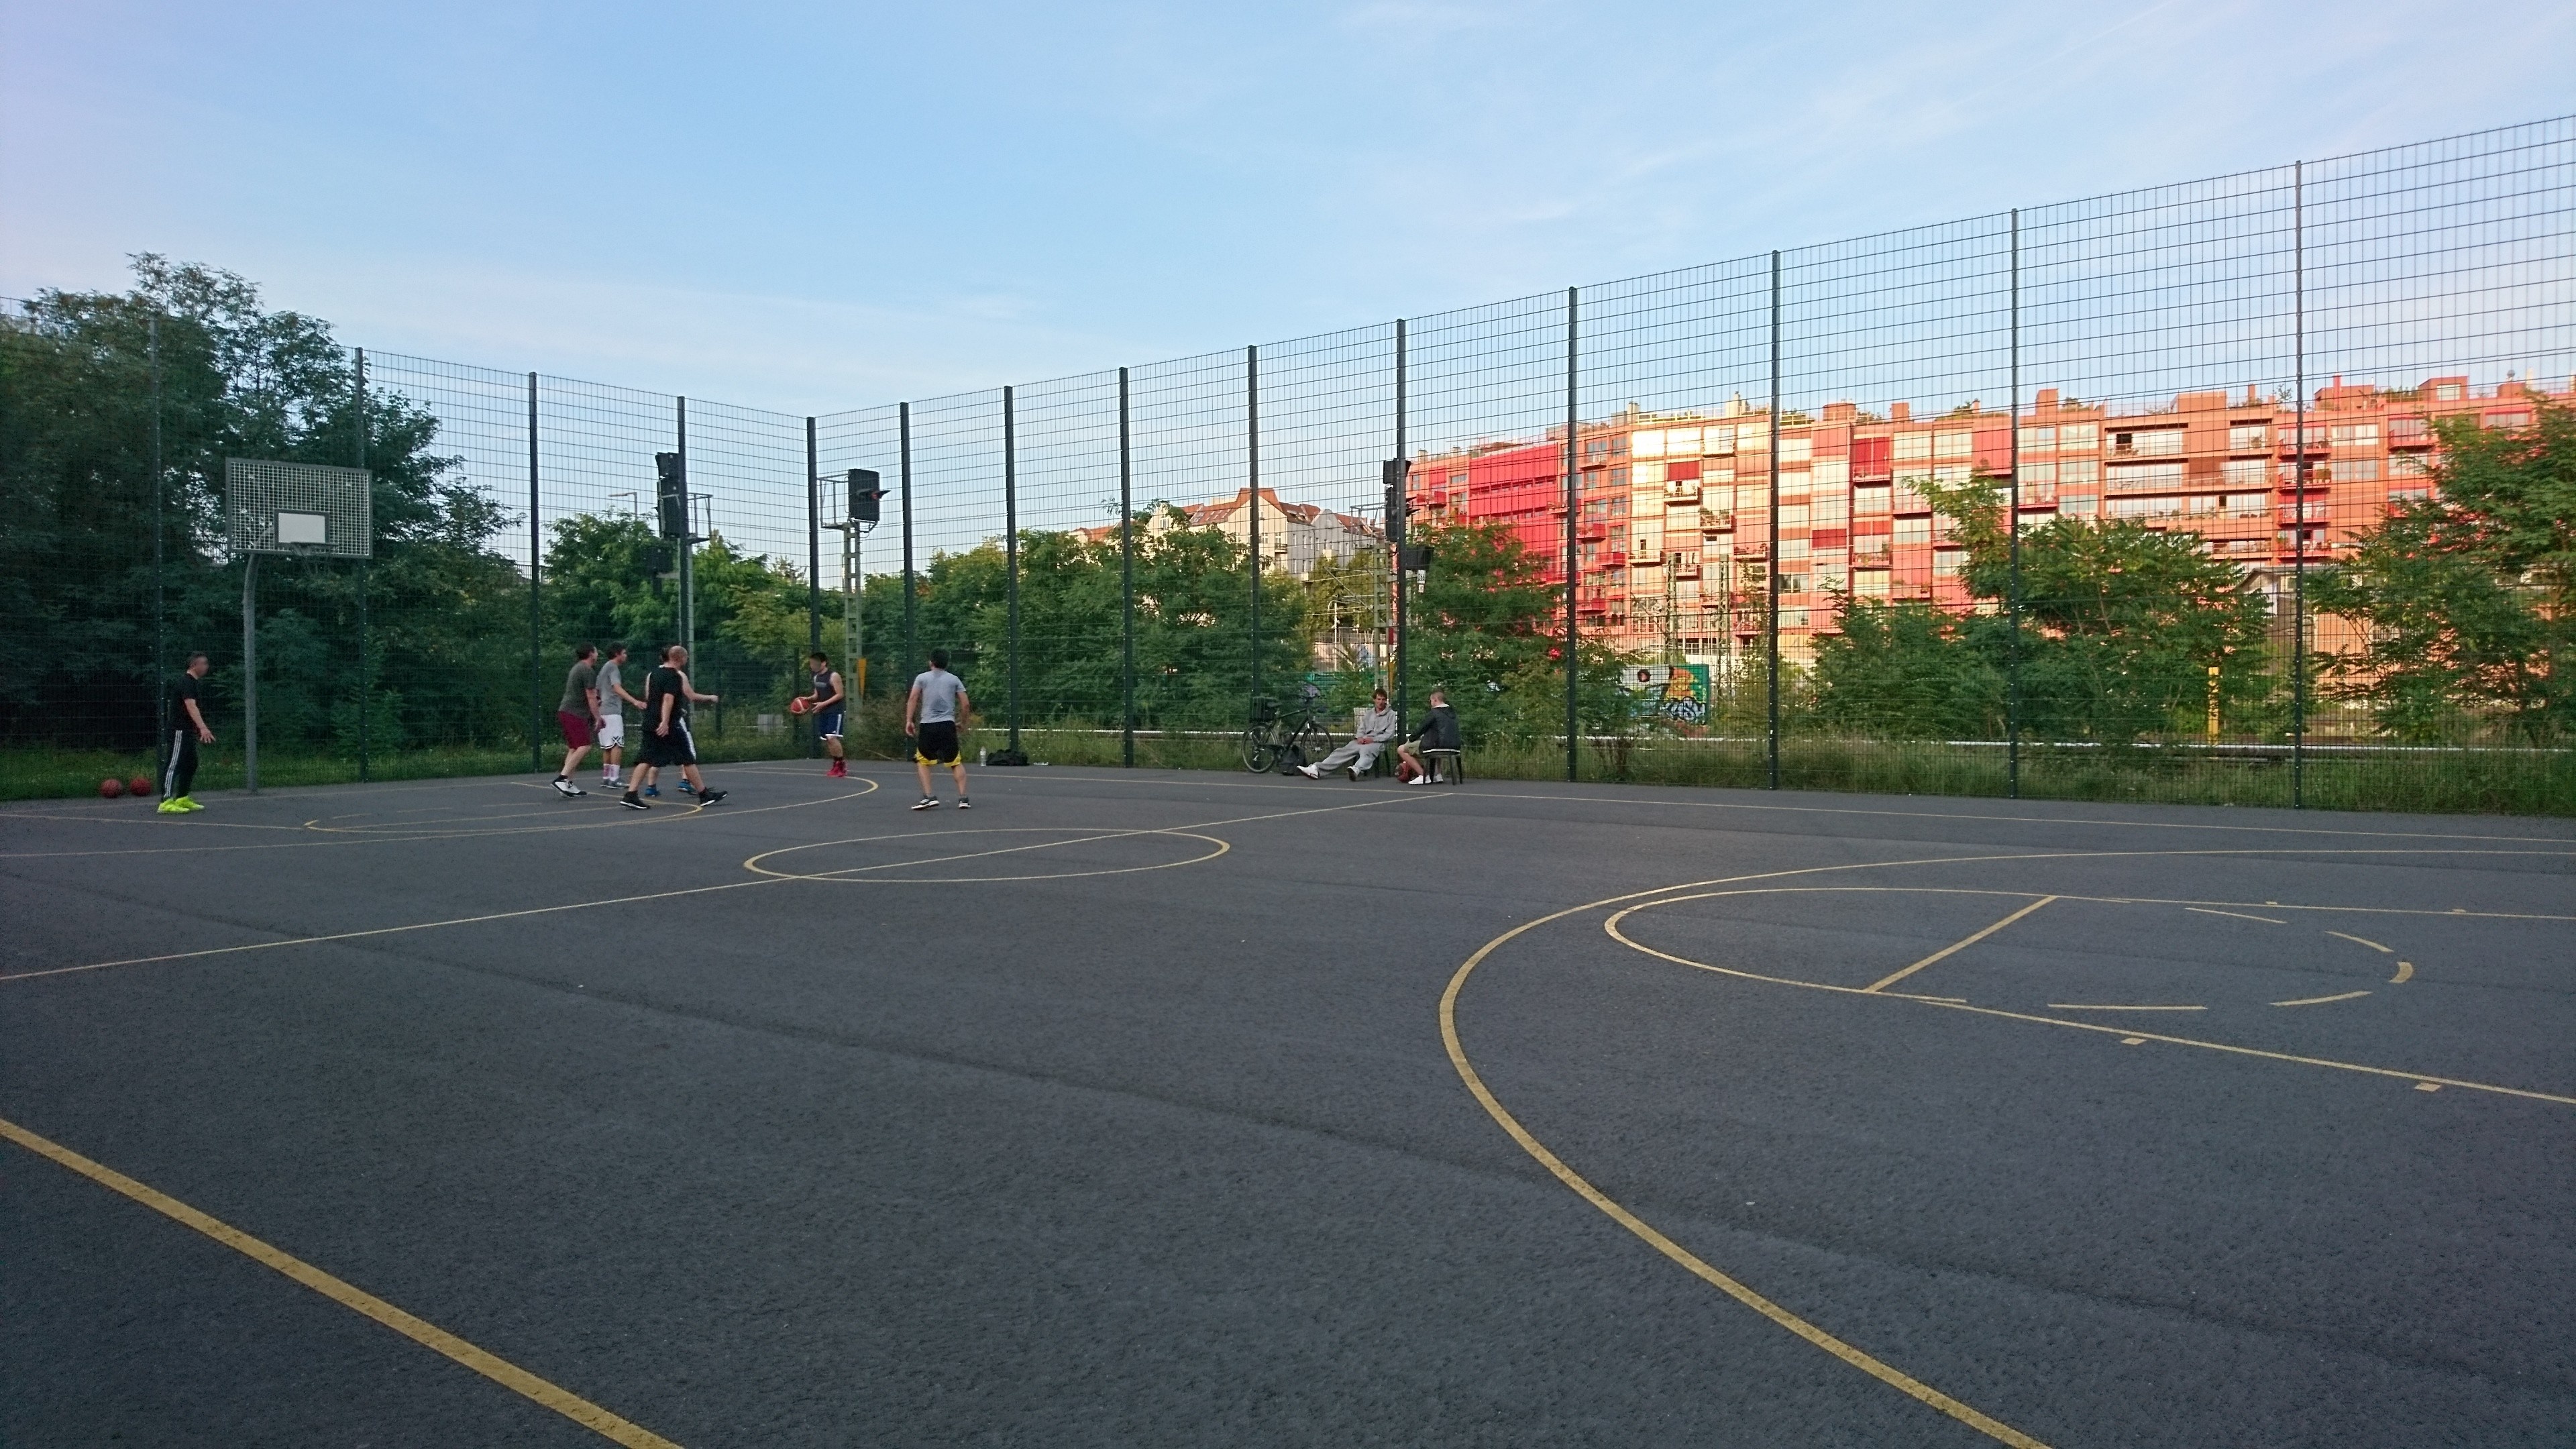 Streetball: 3x3 variation of basketball, Berlin Basketball Court. 3840x2160 4K Wallpaper.